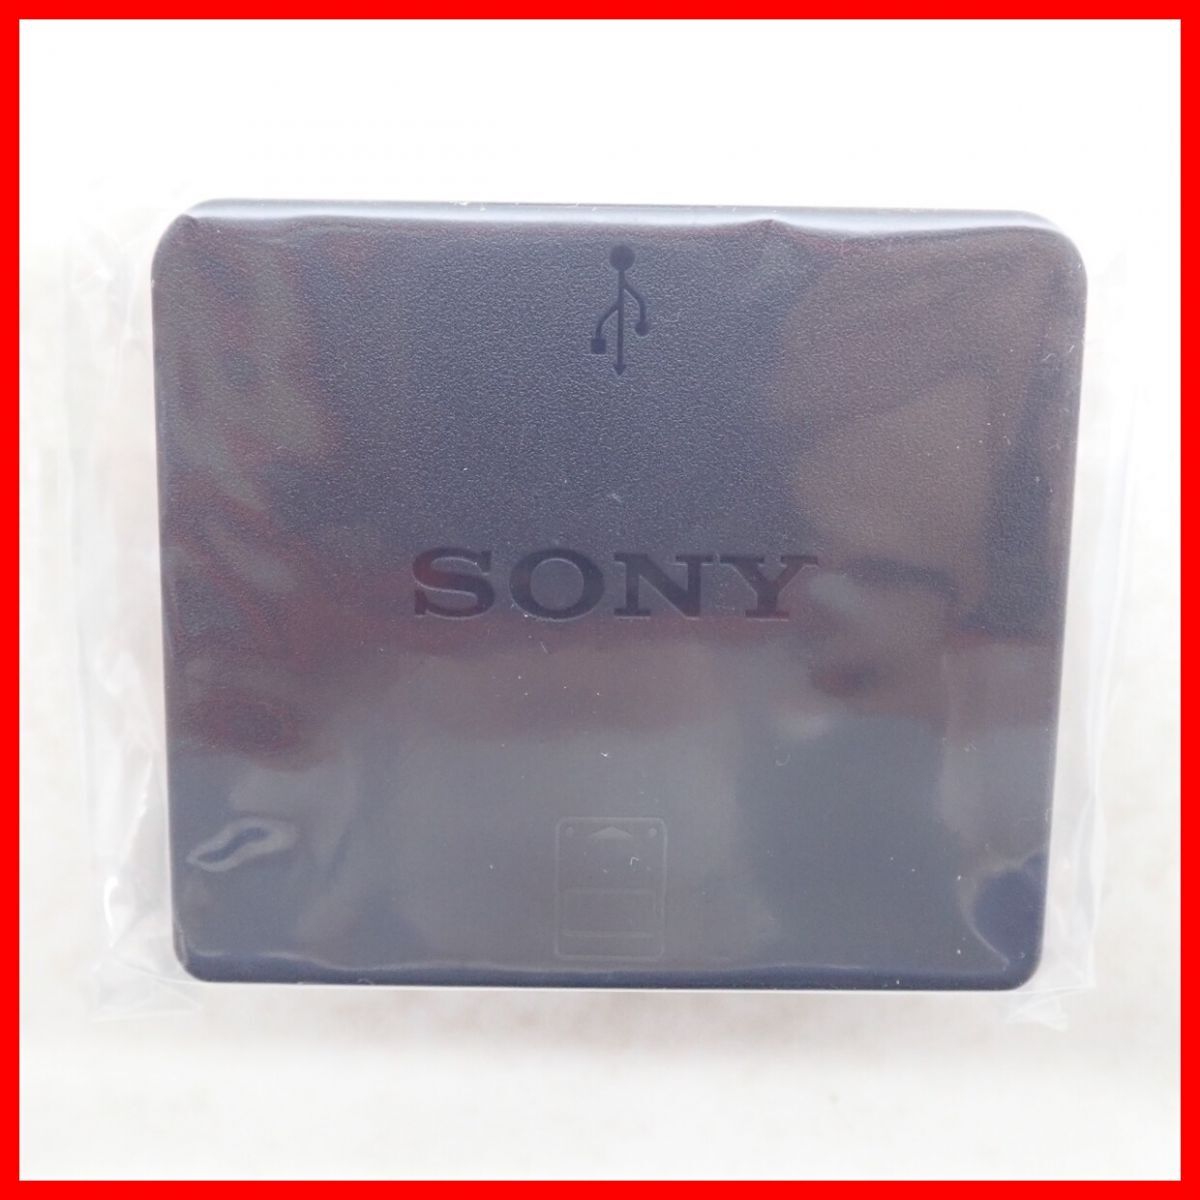  не использовался PS3 PlayStation 3 карта памяти адаптор CECHZM1 PlayStation3 MEMORY CARD ADAPTOR SONY Sony коробка мнение есть [10